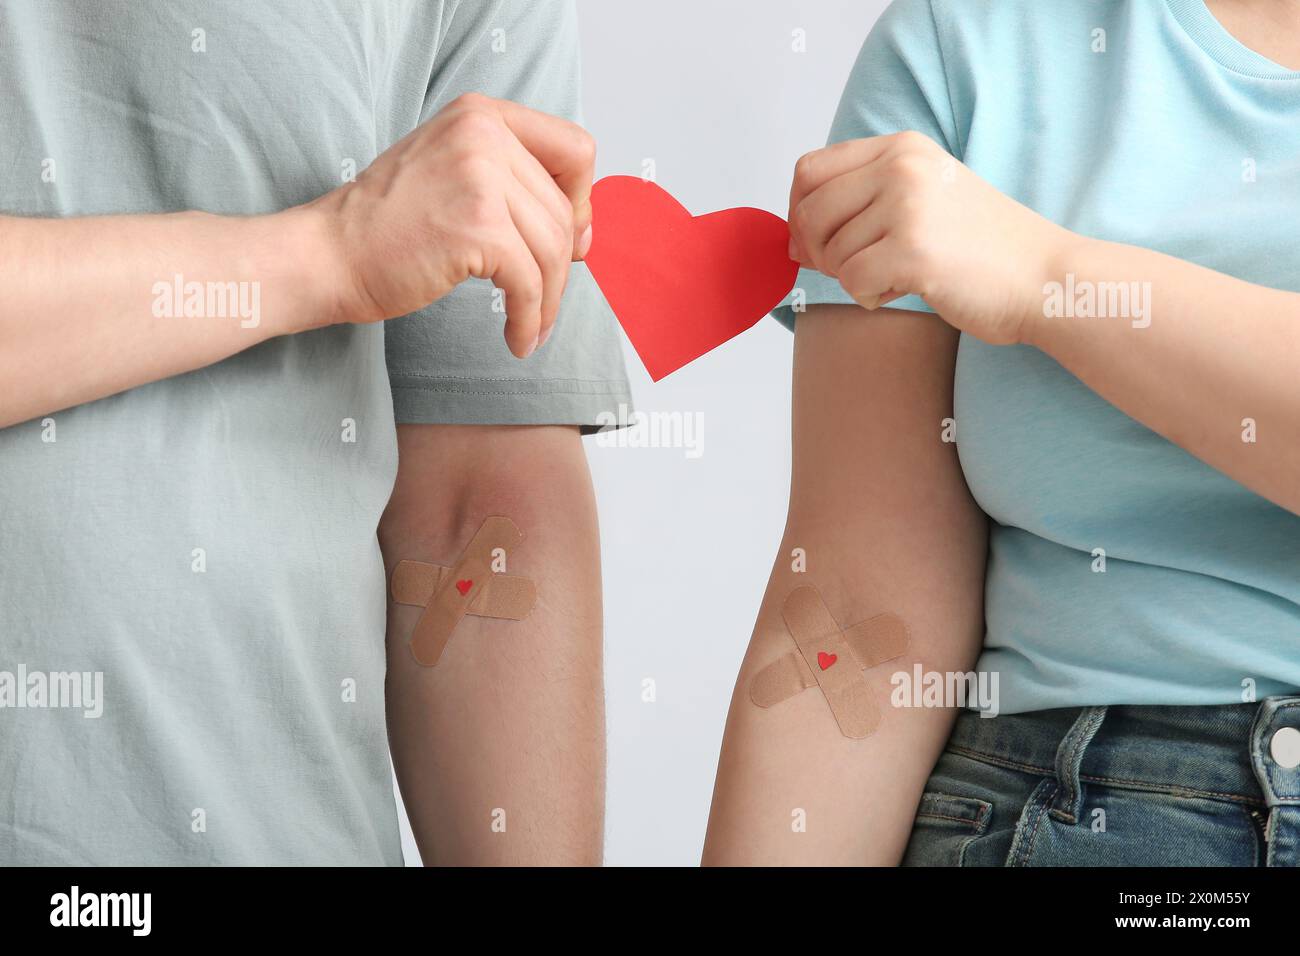 Blutspender mit applizierten medizinischen Pflastern und Papierherz auf grauem Hintergrund, Großaufnahme Stockfoto